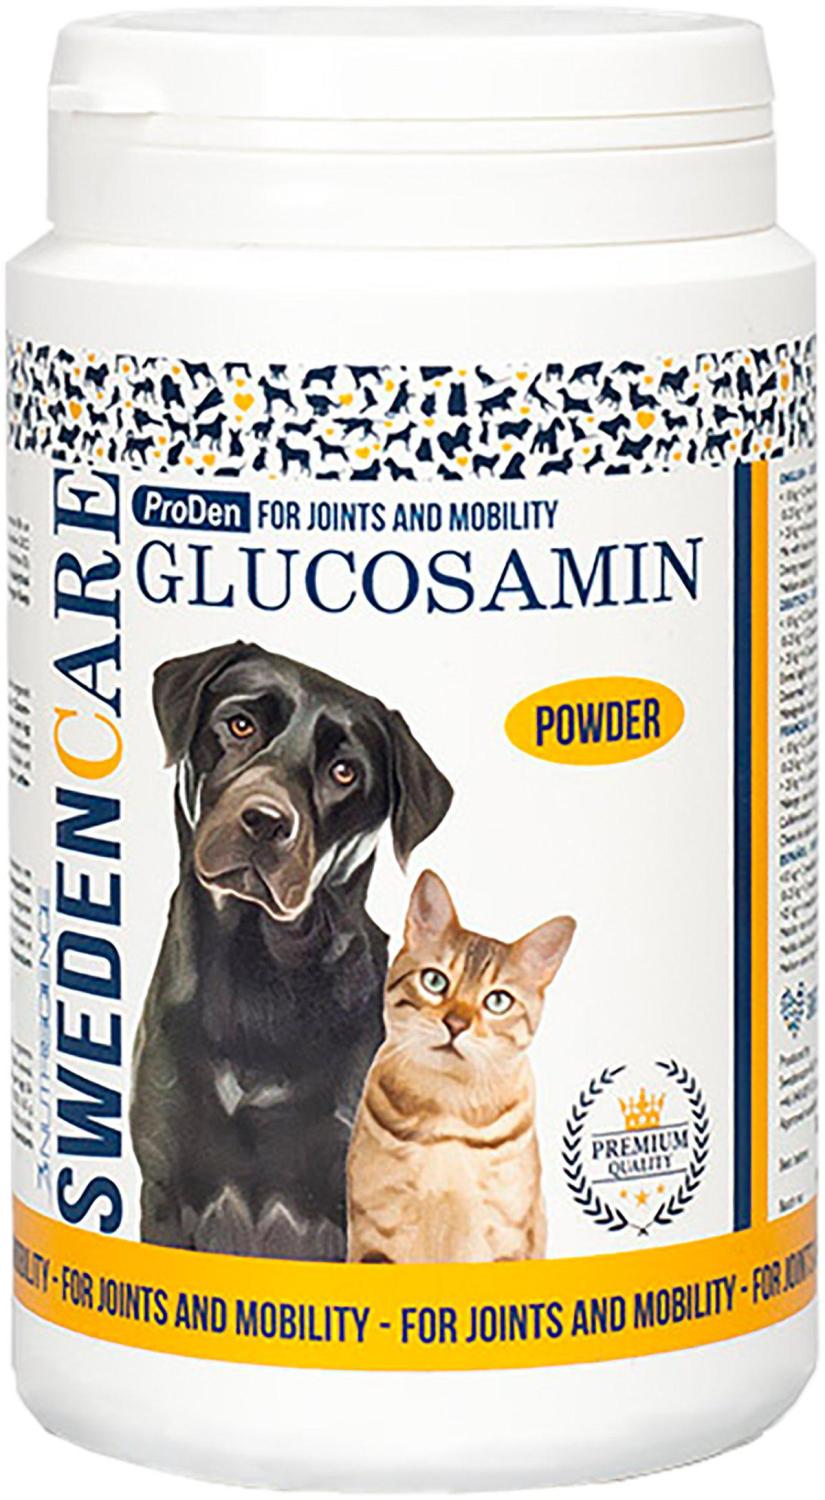 Glucosamin 100 g